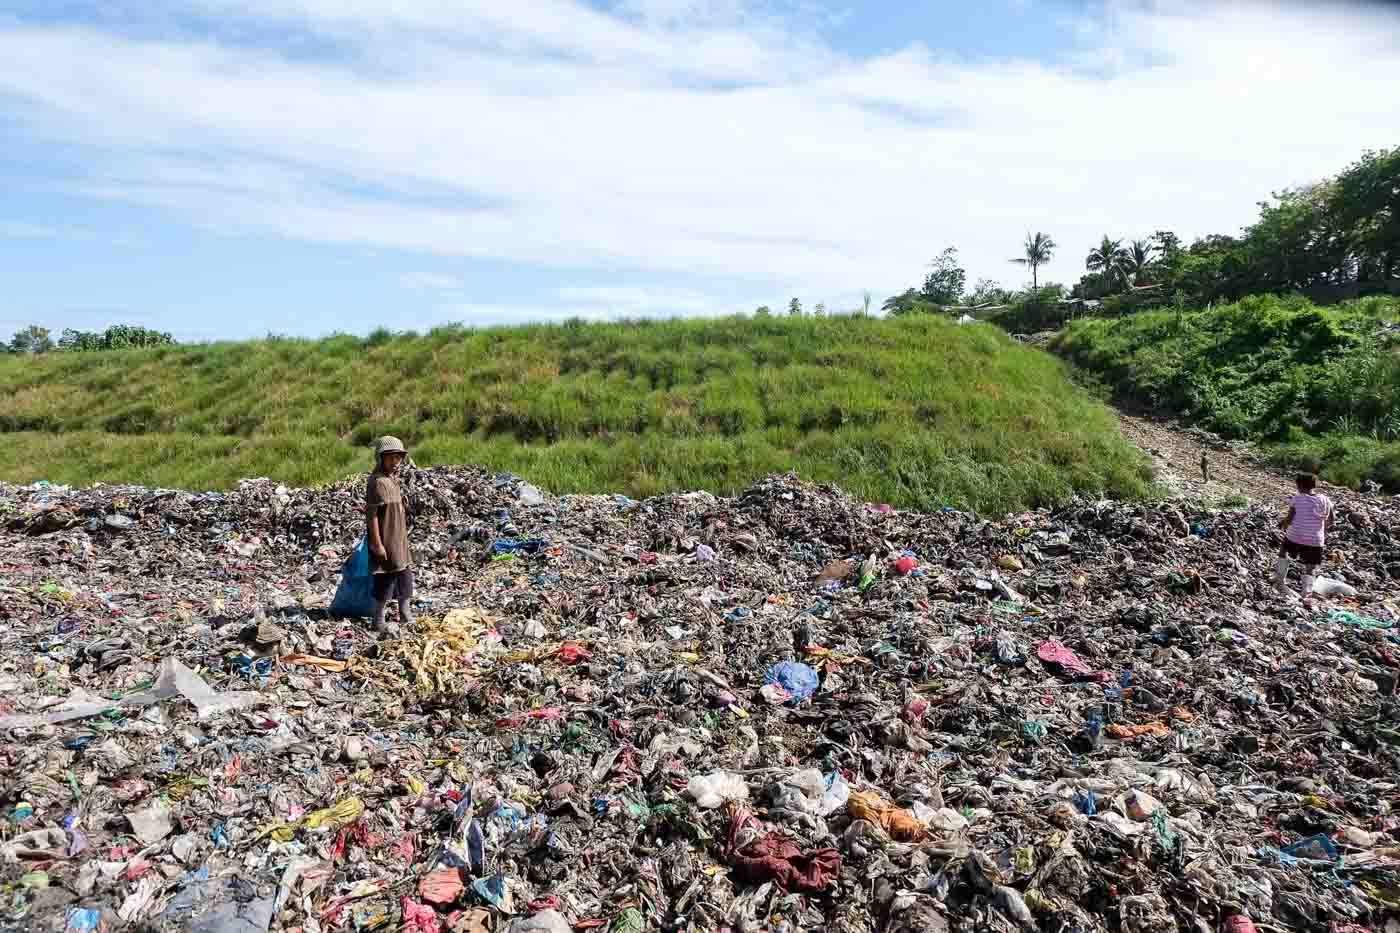 Cagayan de Oro to close illegal dumpsite, open new landfill in April